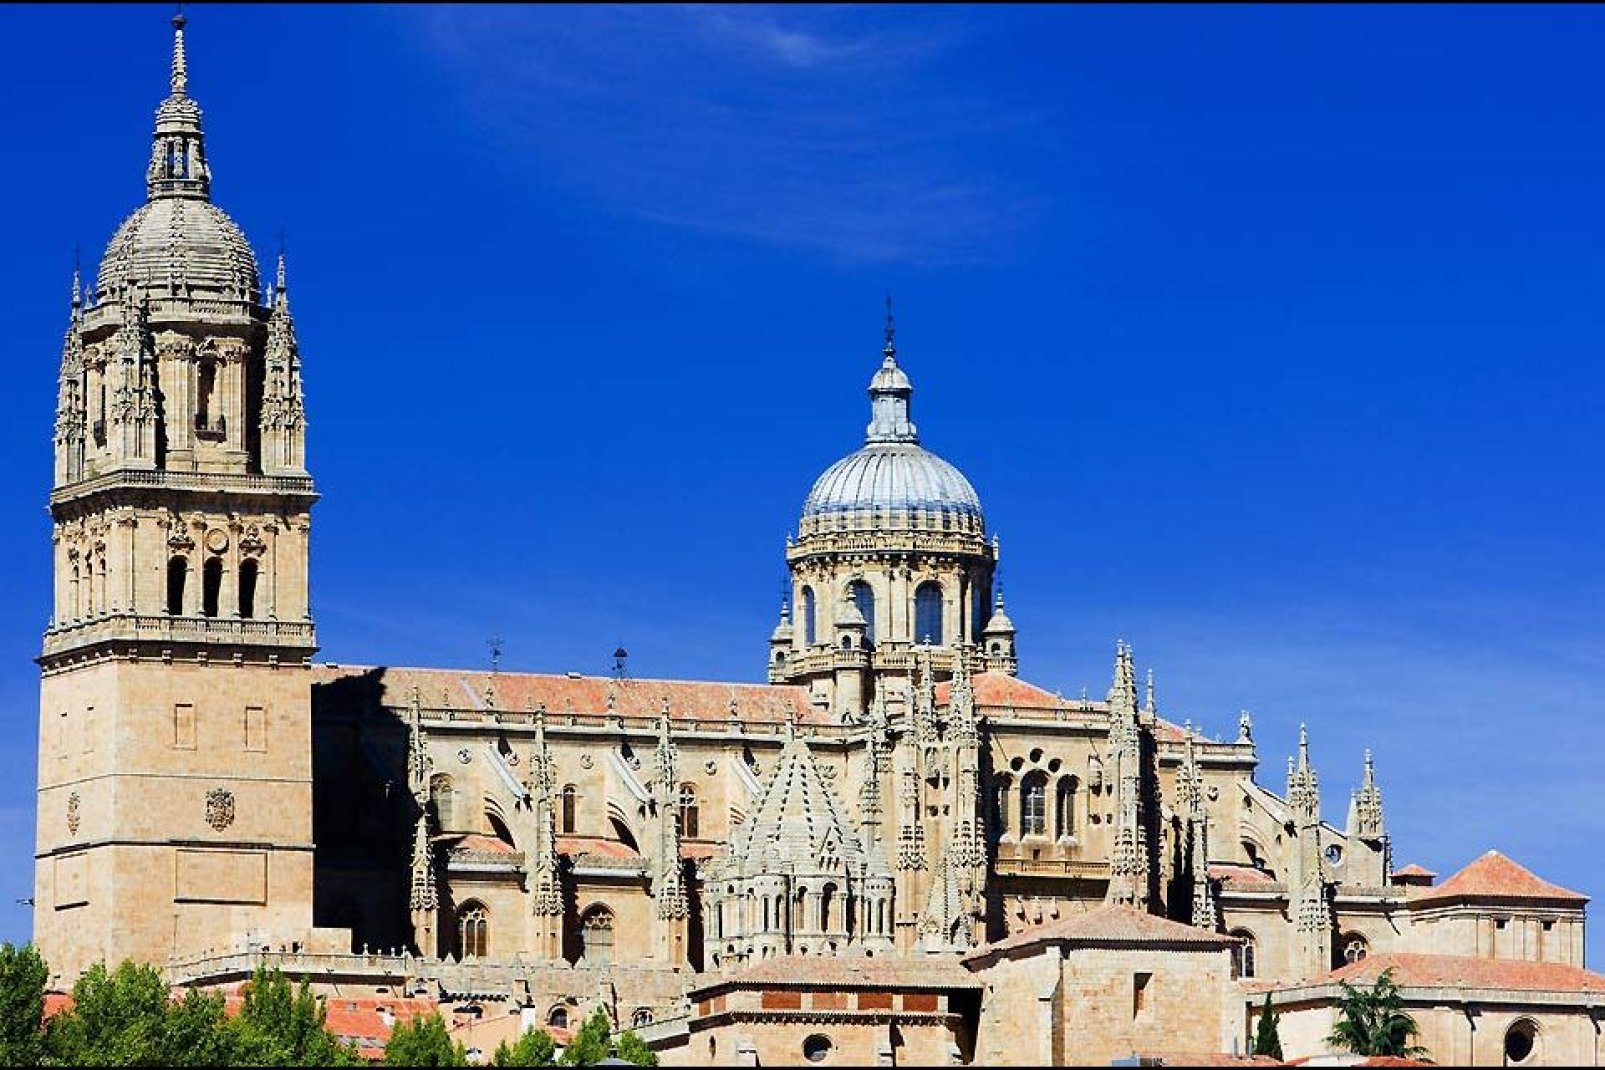 Se alzan dos catedrales una junta a la otra: La «vieja» data del siglo XII y la «nueva» se construyó en el siglo XVI.